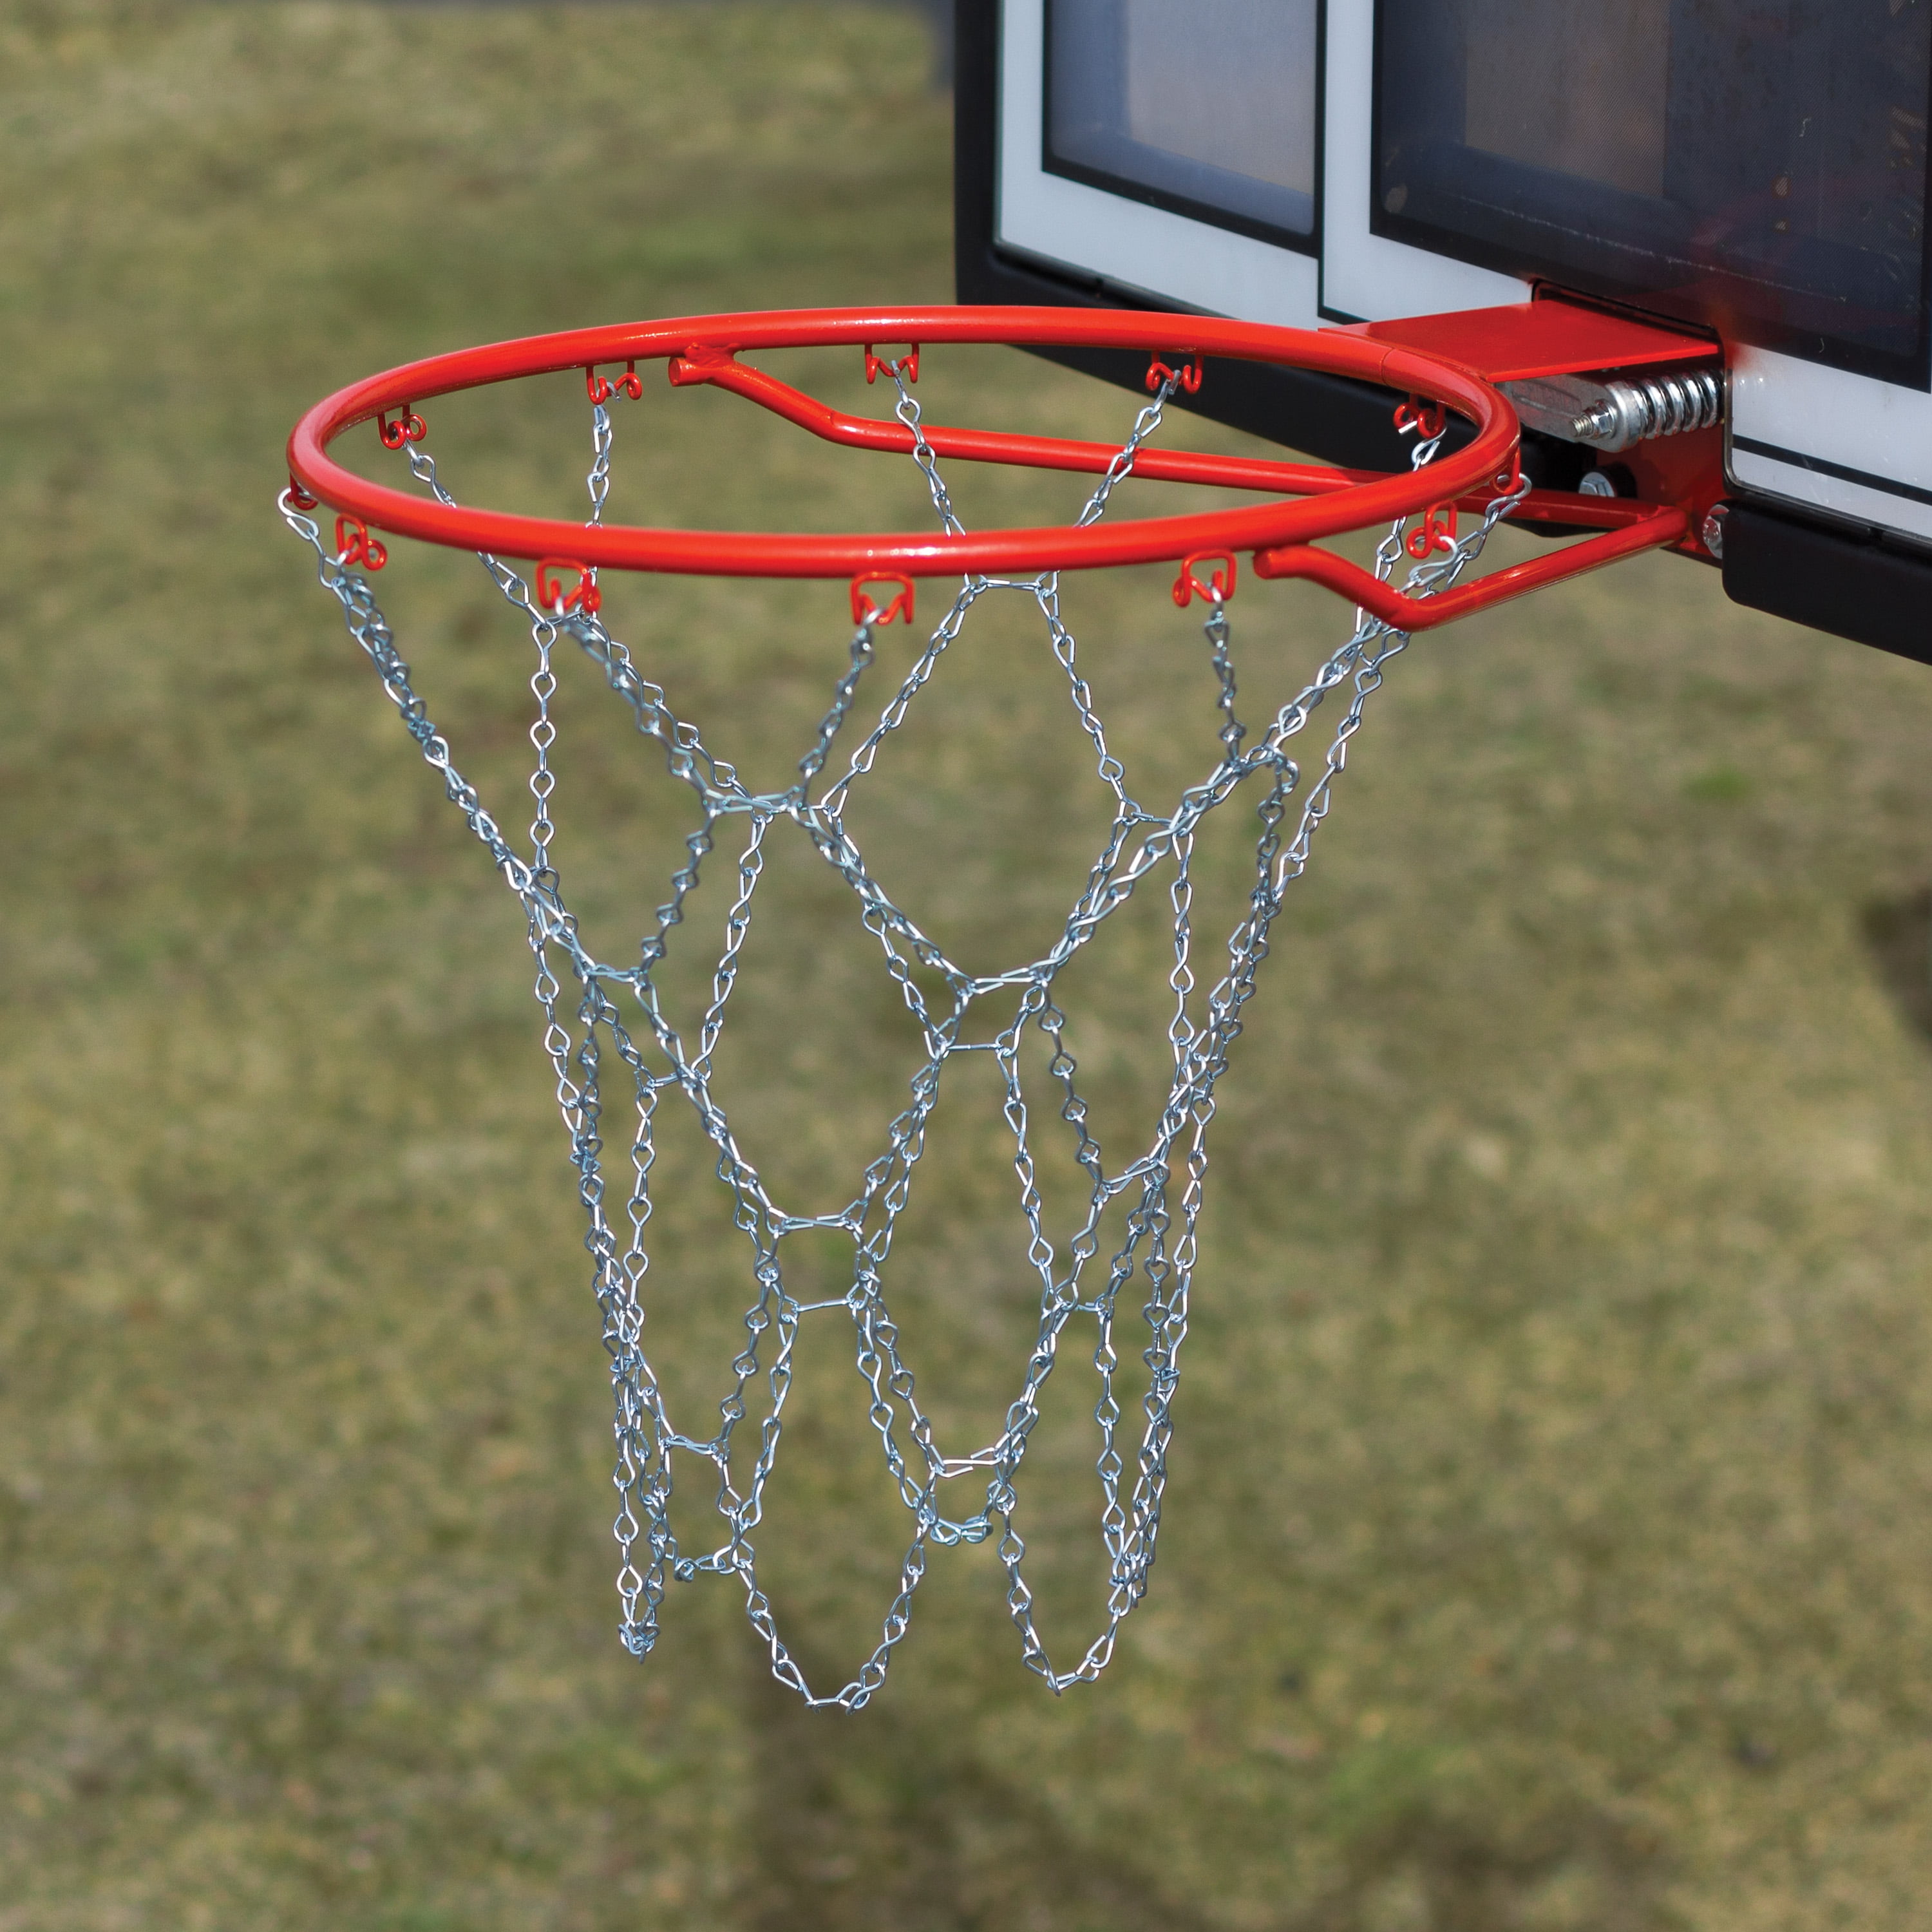 Basketball Net Netting Chain Metal Mesh Goal Hoop Indoor Outdoor Heavy Duty 